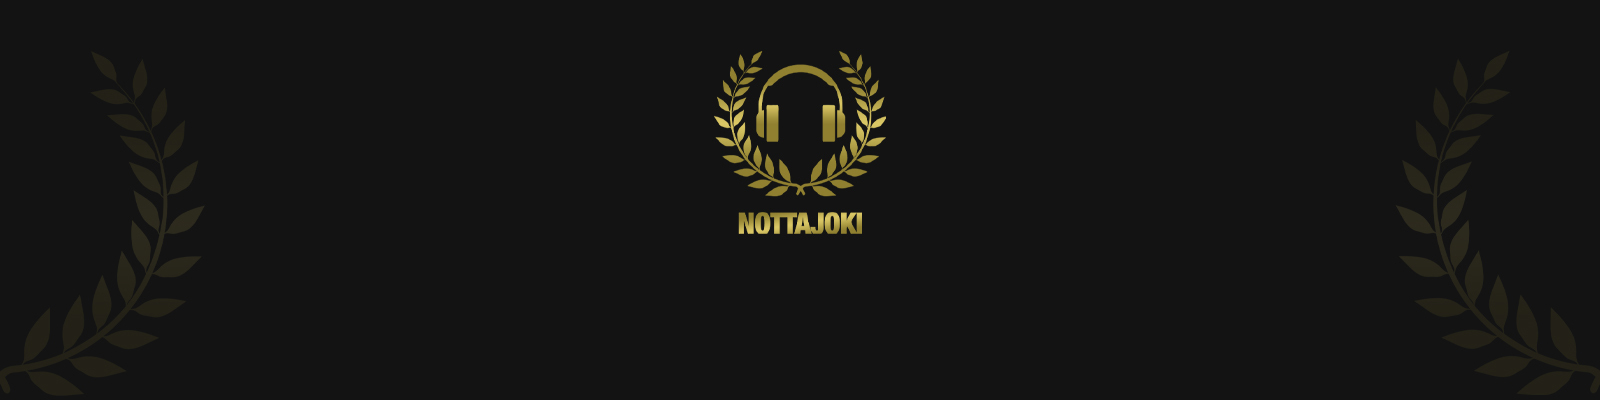 Nottajoki Podcast